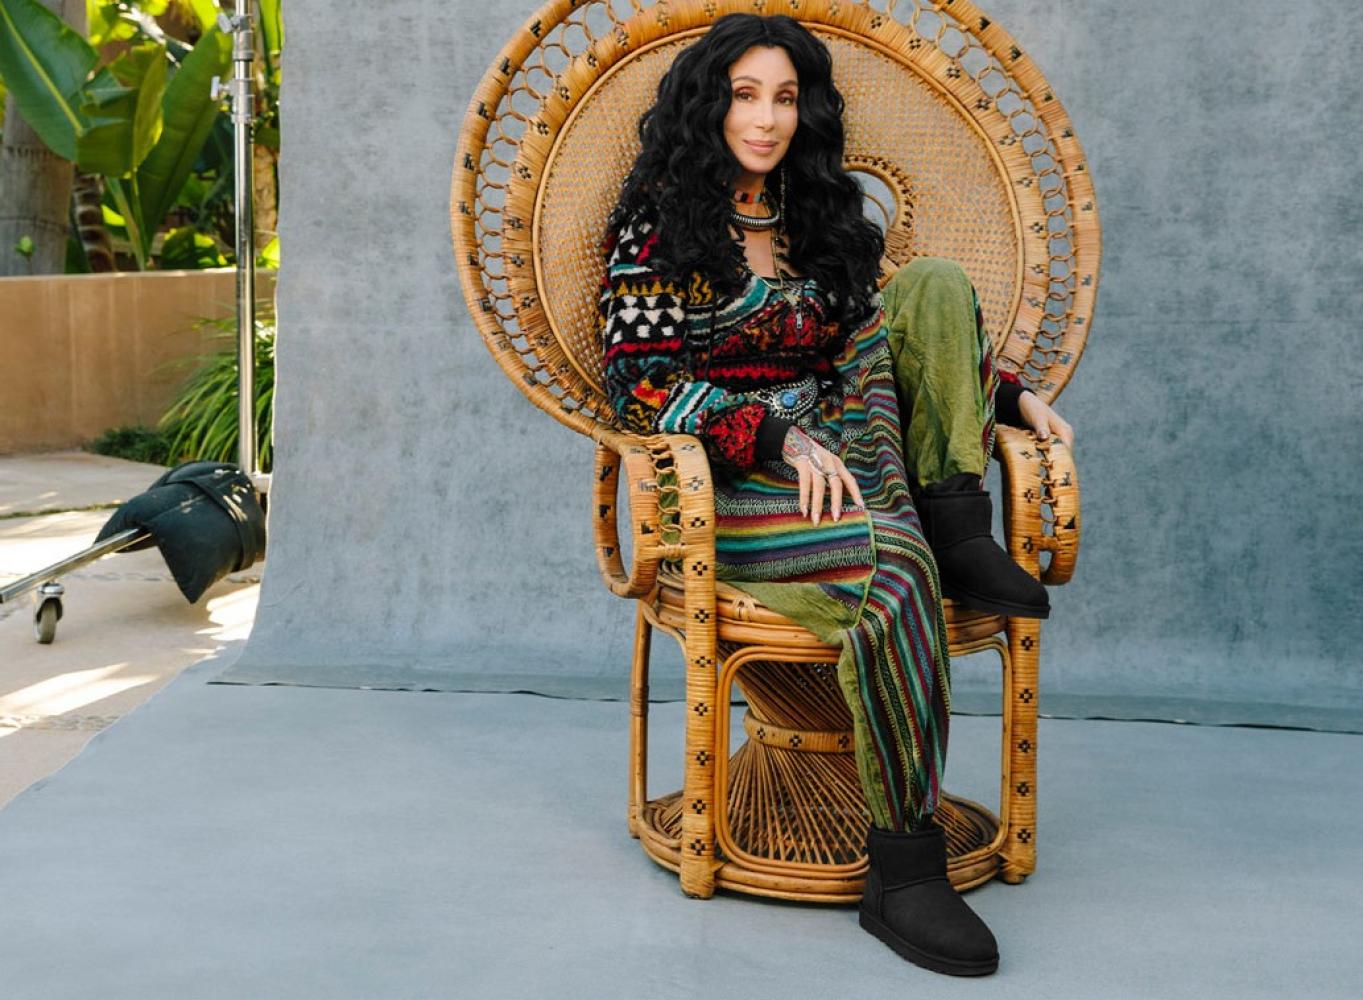 Foto: Courtesy Ugg Warme Füße: Sängerin Cher wirbt für Ugg-Boots